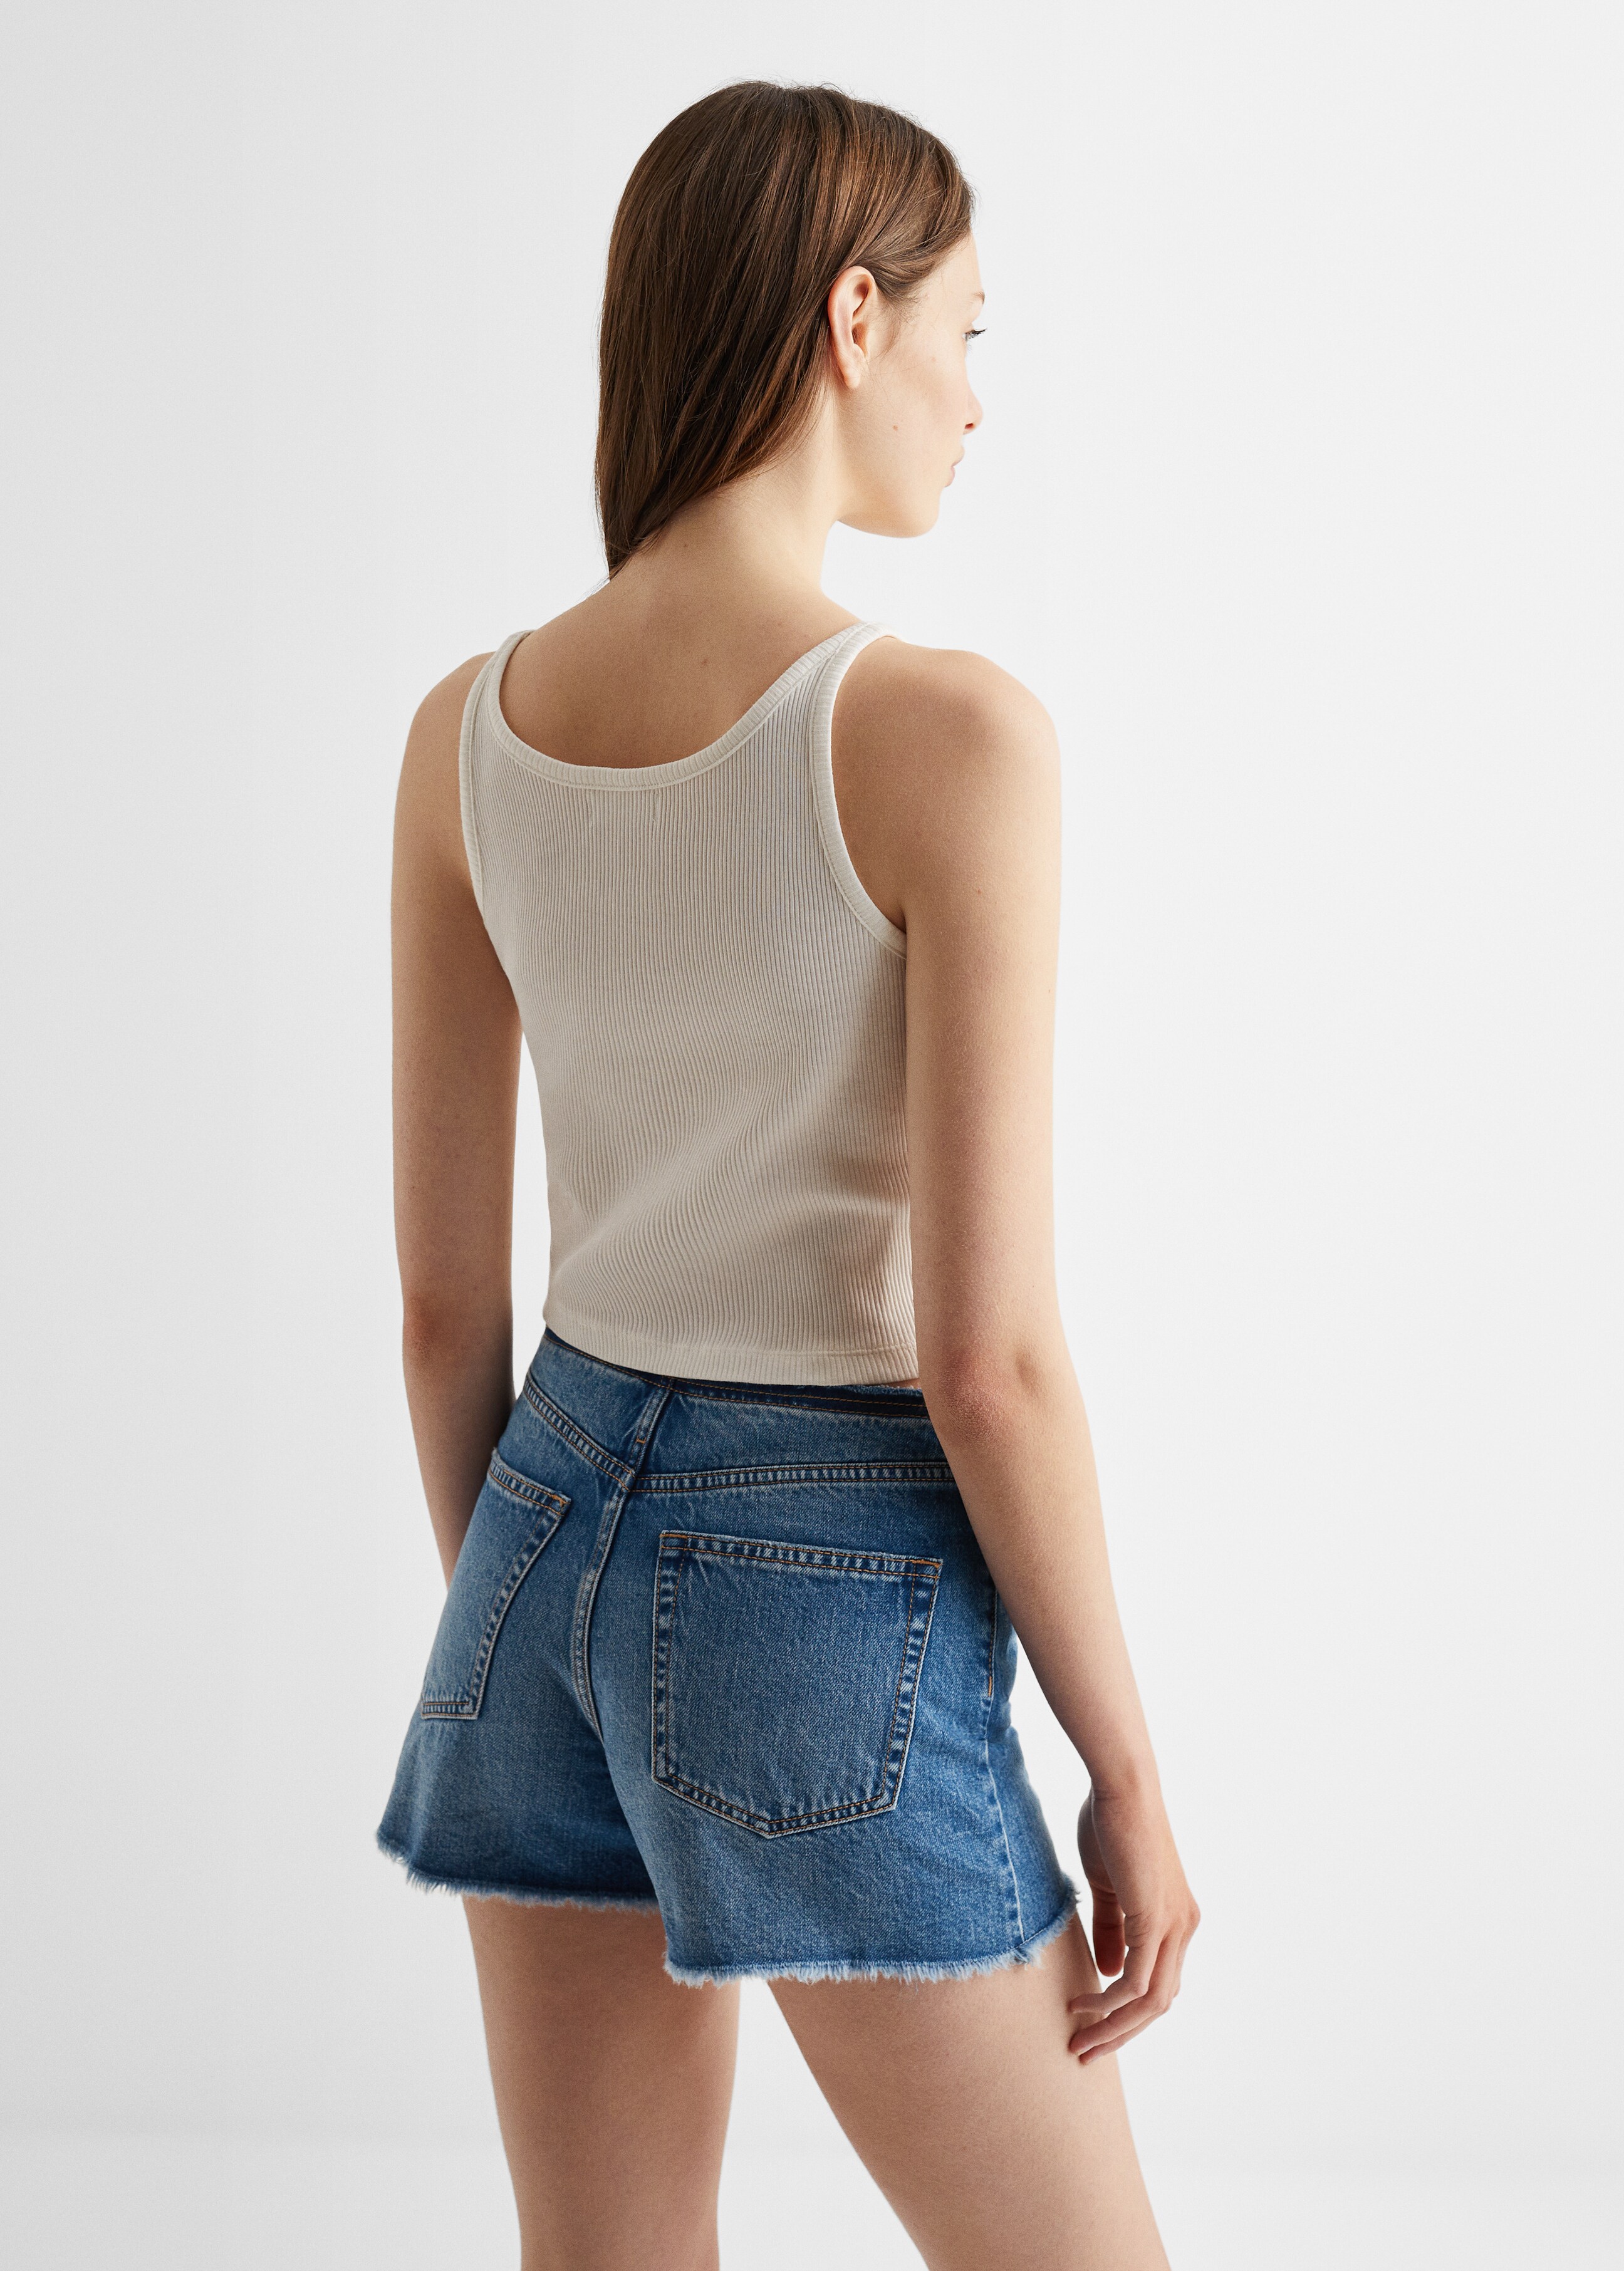 Jeans-Shorts mit mittlerer Bundhöhe - Rückseite des Artikels